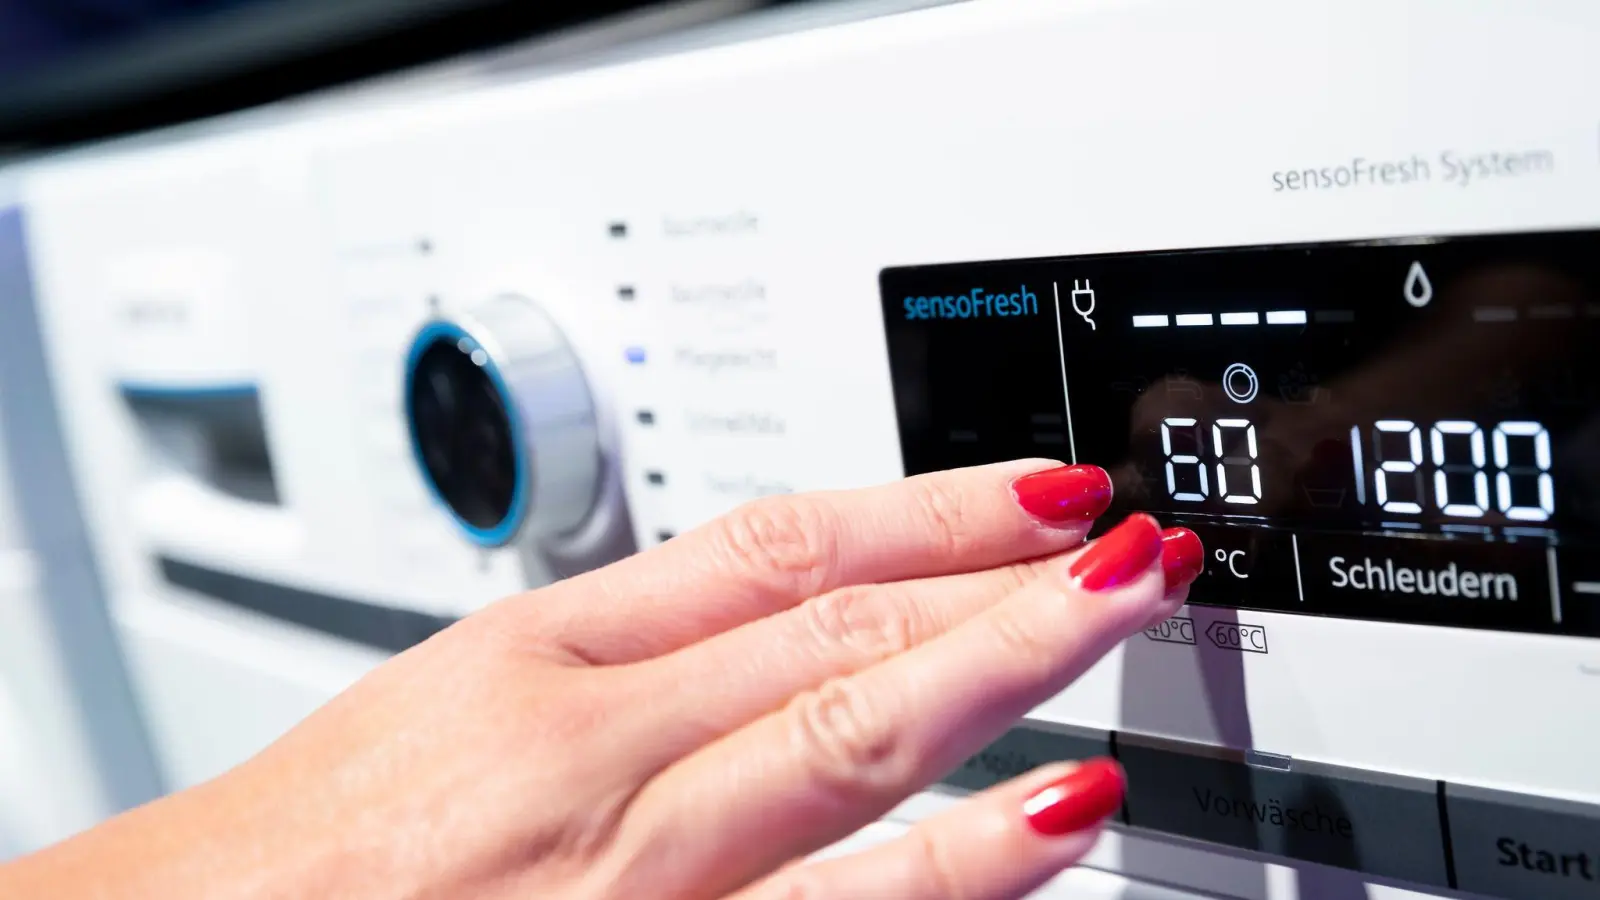 Mindestens einmal im Monat sollten Sie einen Waschgang bei 60 Grad durchführen, damit die Waschmaschine hygienisch funktioniert. (Foto: Florian Schuh/dpa-tmn)